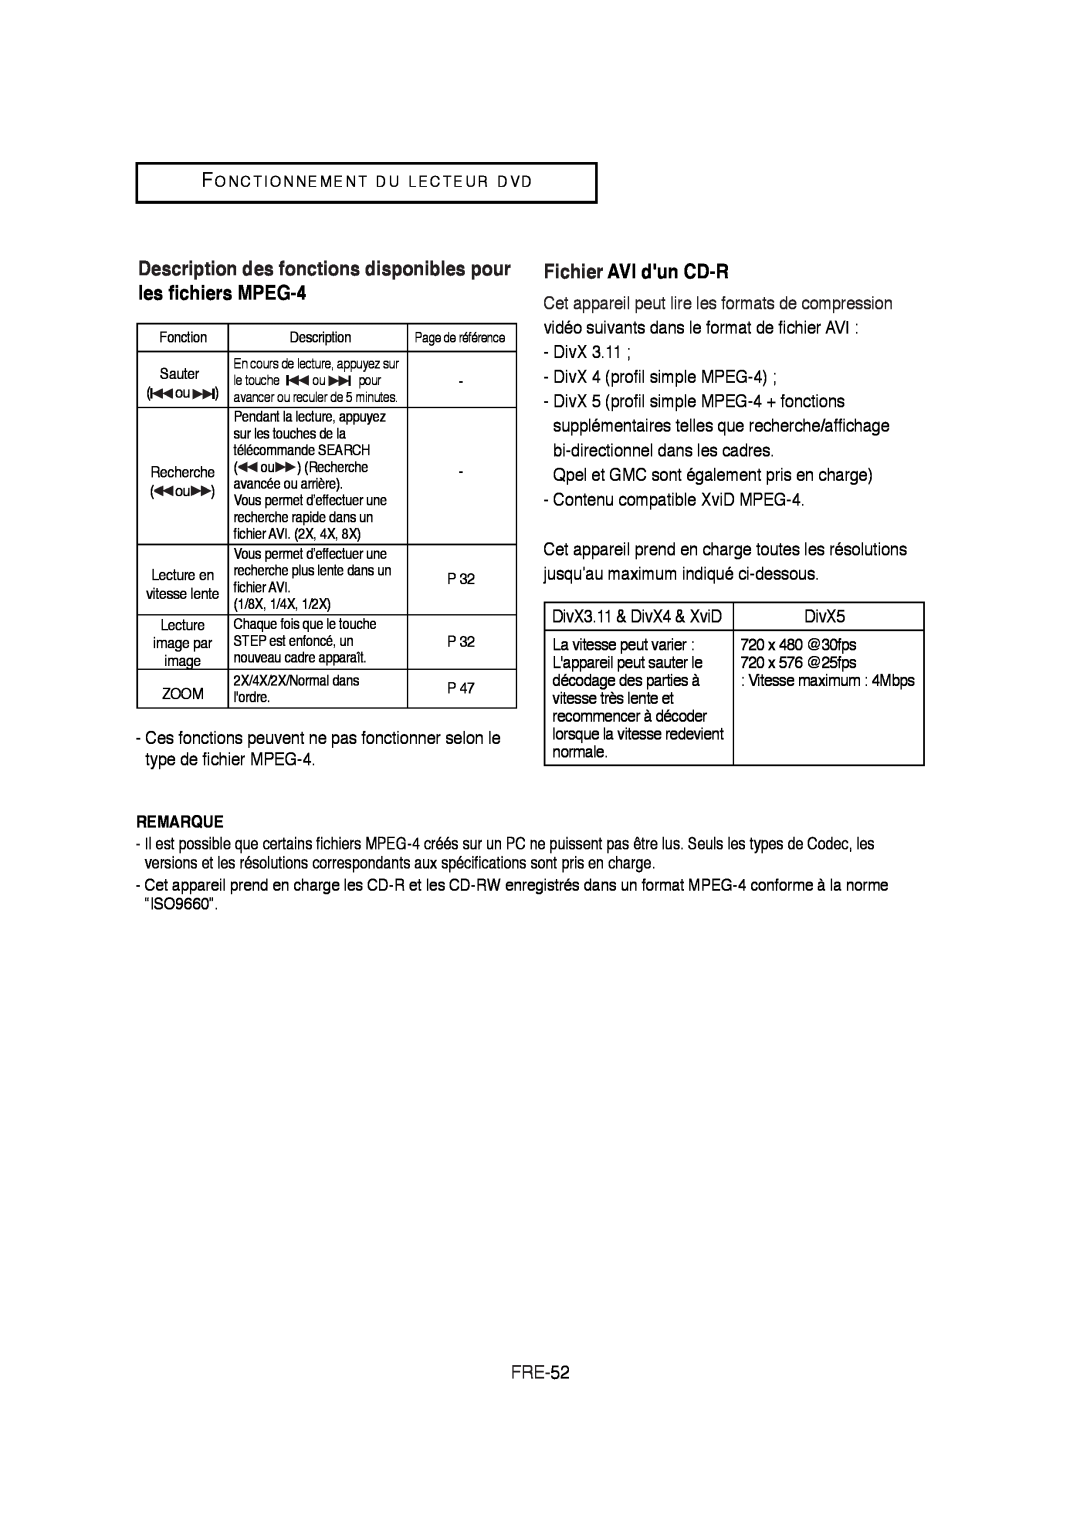 Samsung V6700-XAC Description des fonctions disponibles pour les fichiers MPEG-4, Fichier AVI dun CD-R, FRE-52, Remarque 